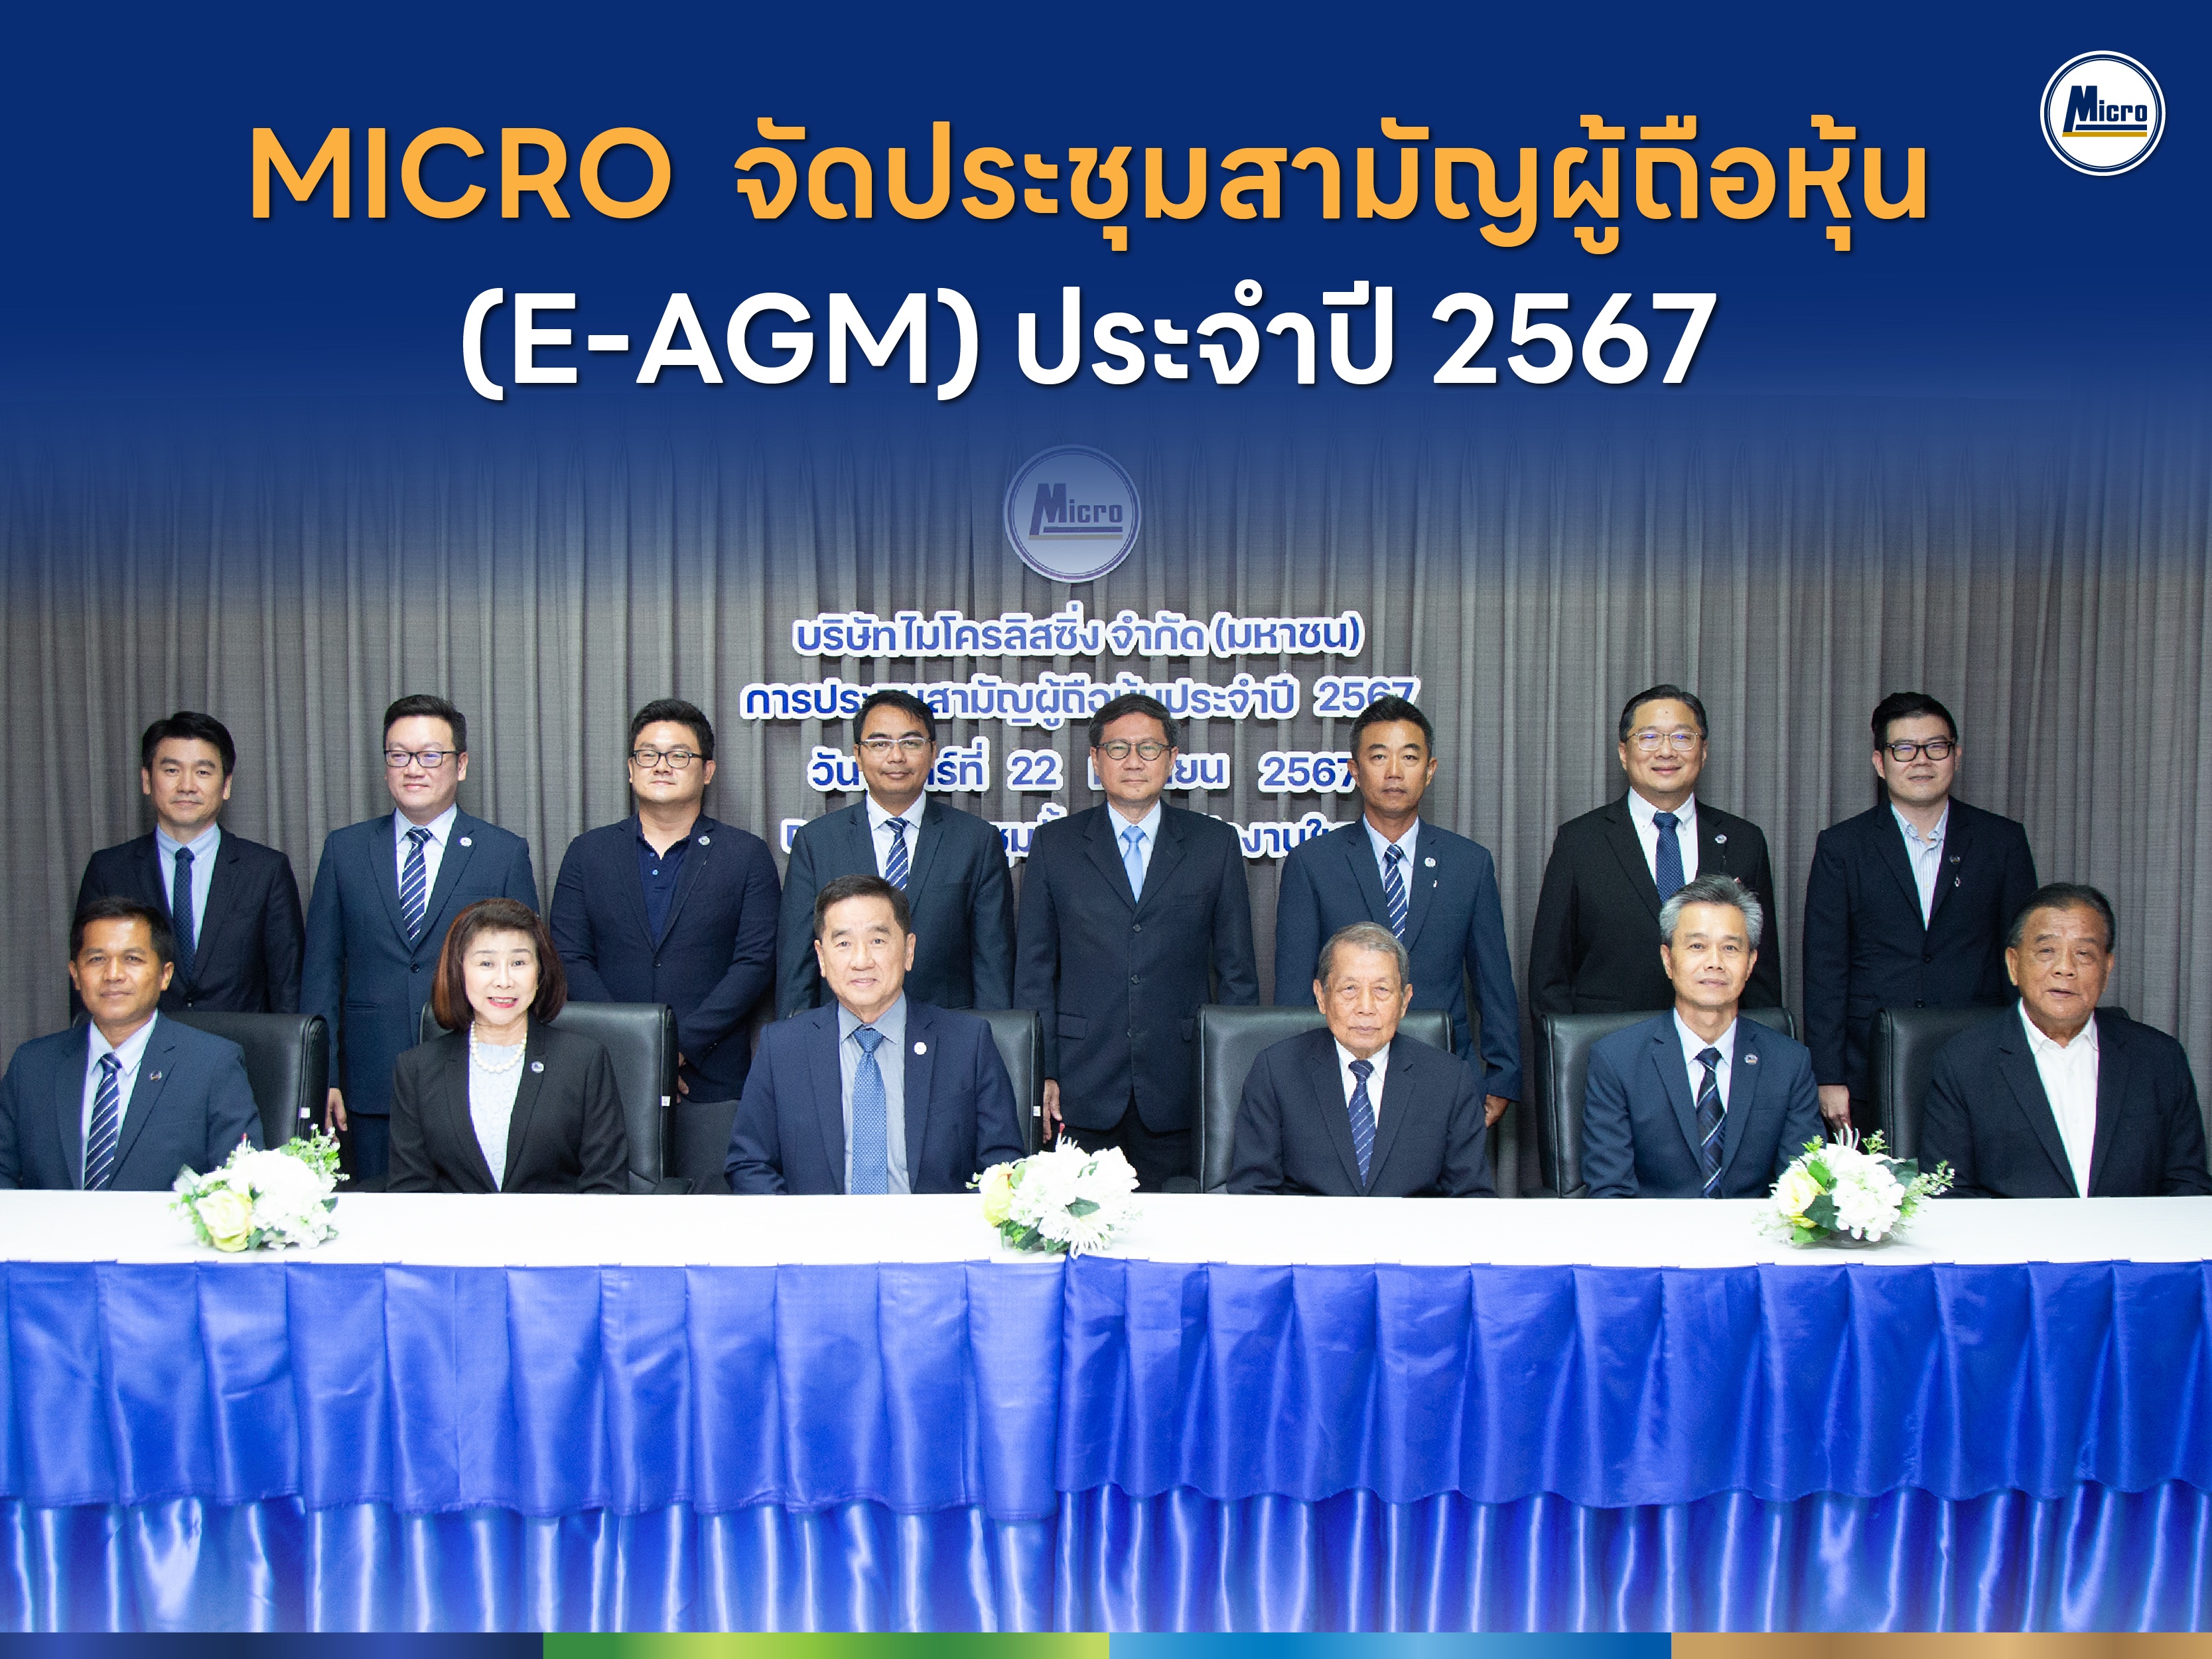 MICRO จัดประชุมสามัญผู้ถือหุ้น (E-AGM) ประจำปี 2567